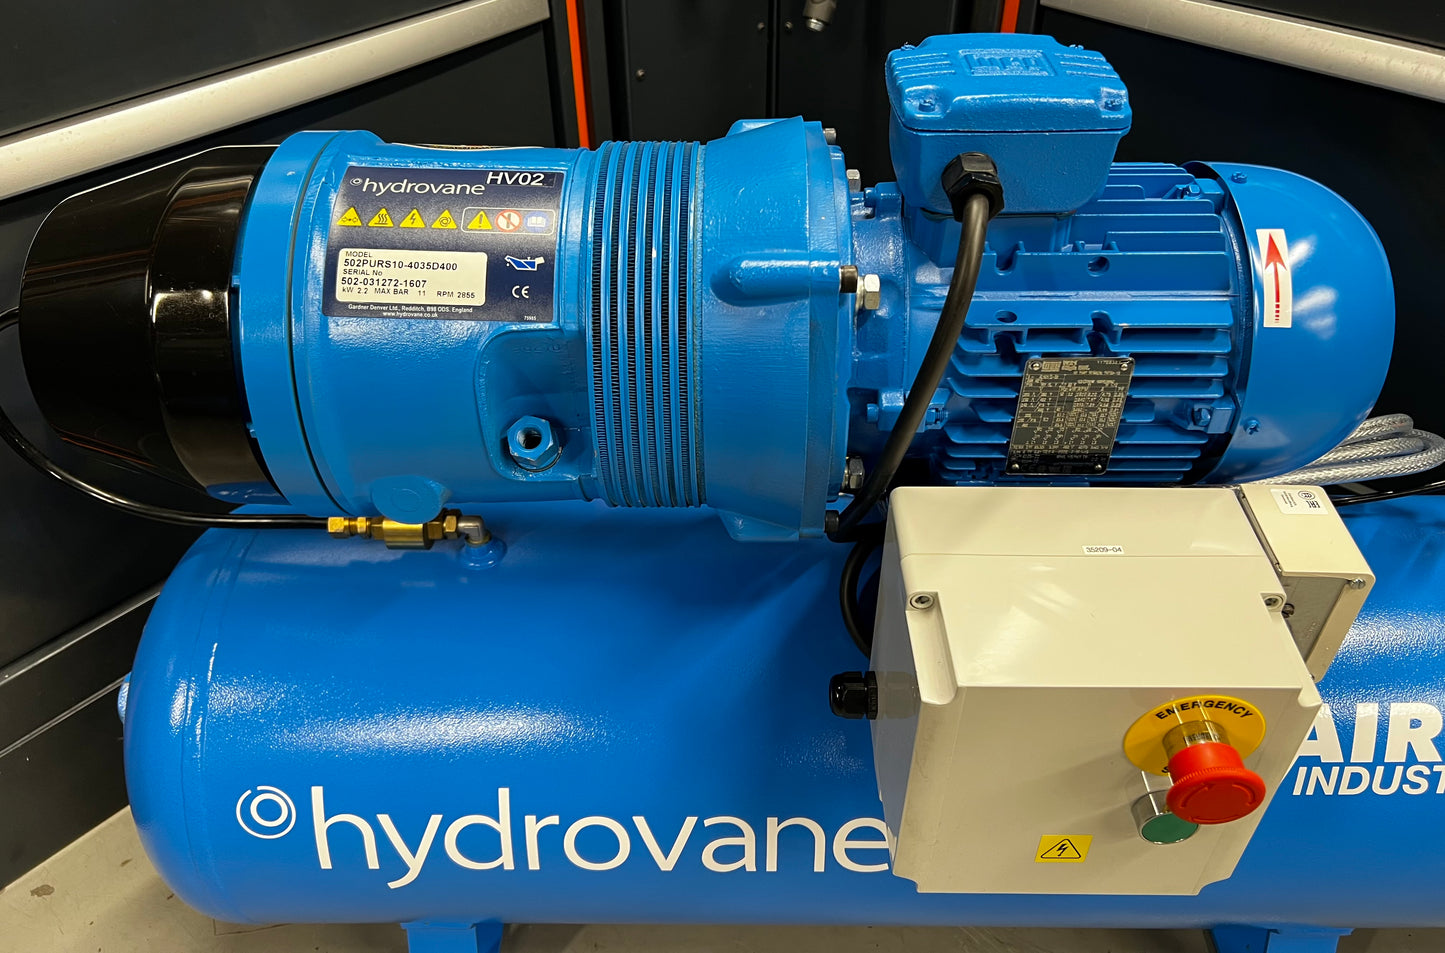 Hydrovane HV02 Receiver Mounted Rotary Vane Compressor (400v Three Phase)